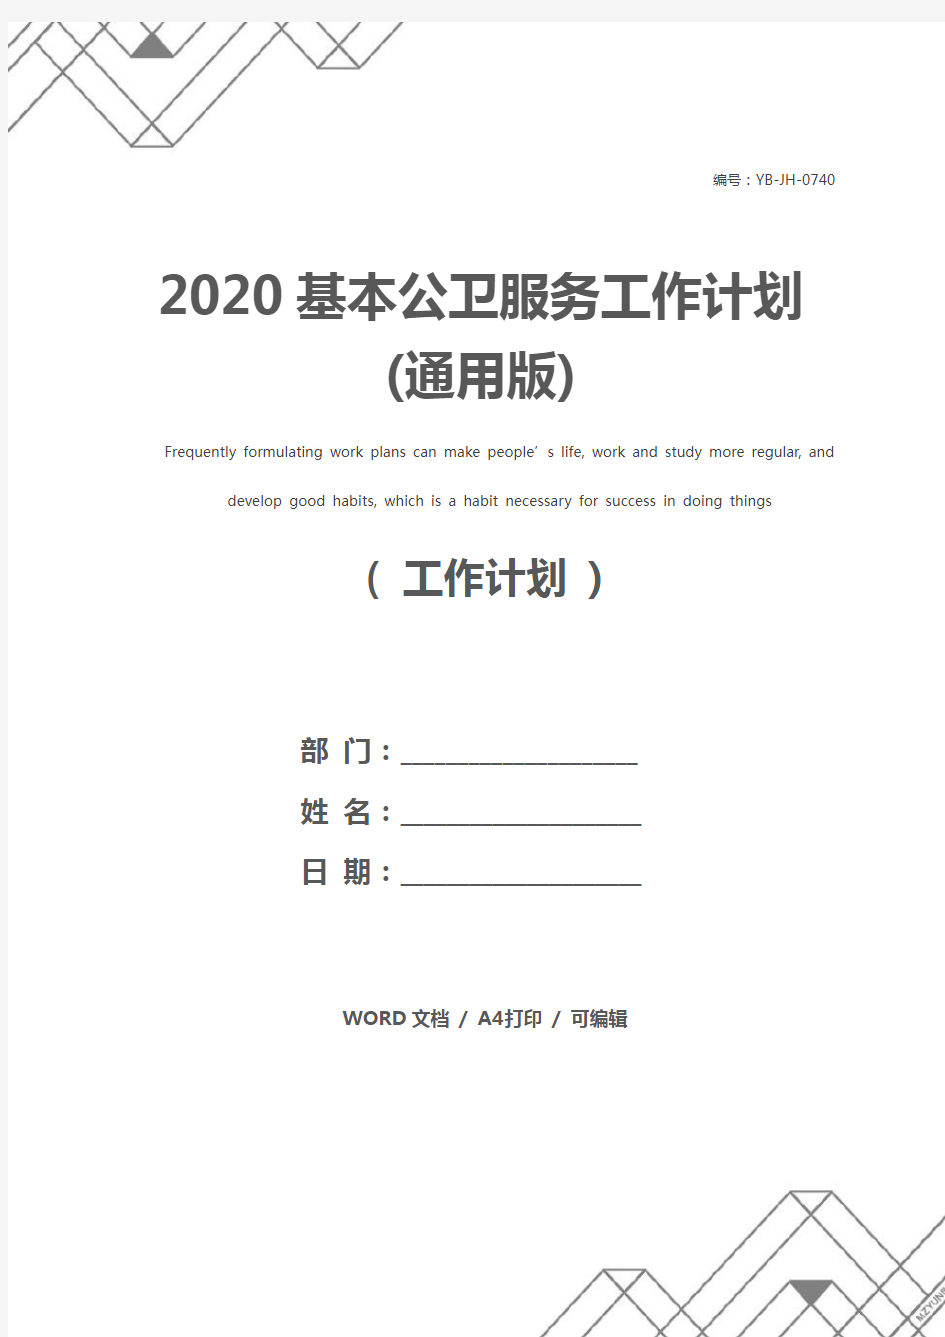 2020基本公卫服务工作计划(通用版)